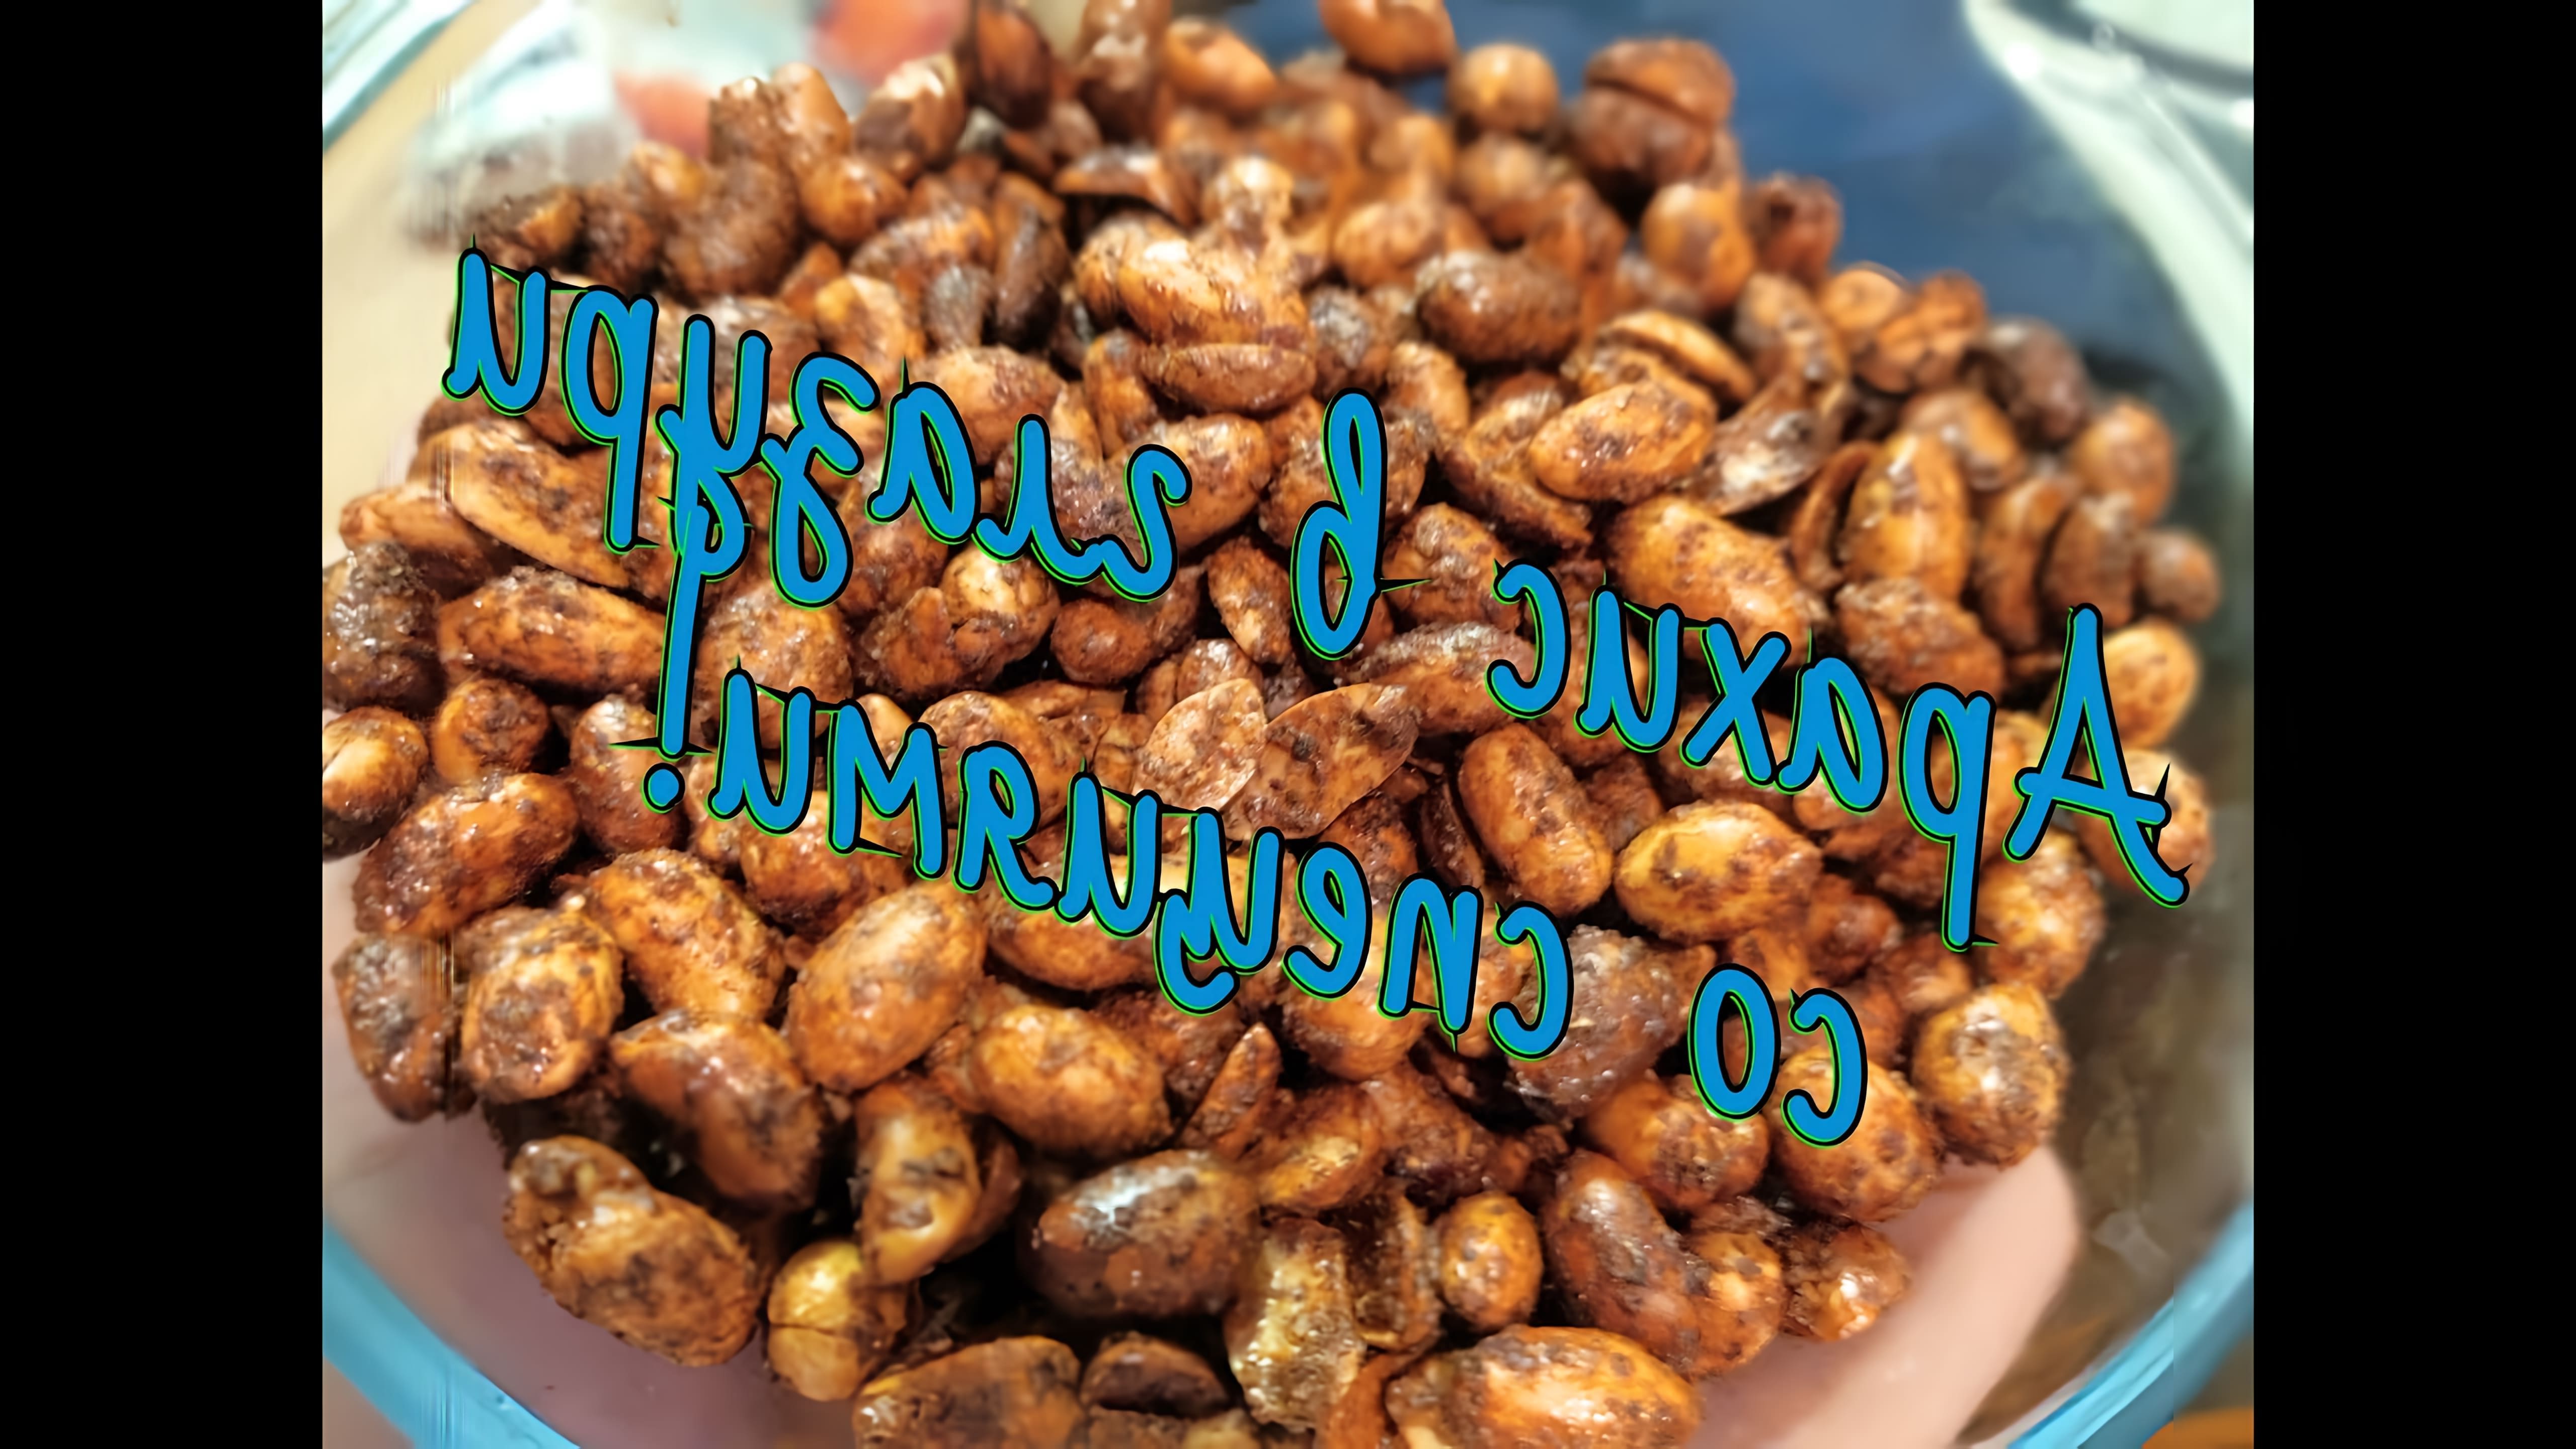 В этом видео демонстрируется процесс приготовления арахиса в хрустящей глазури со специями